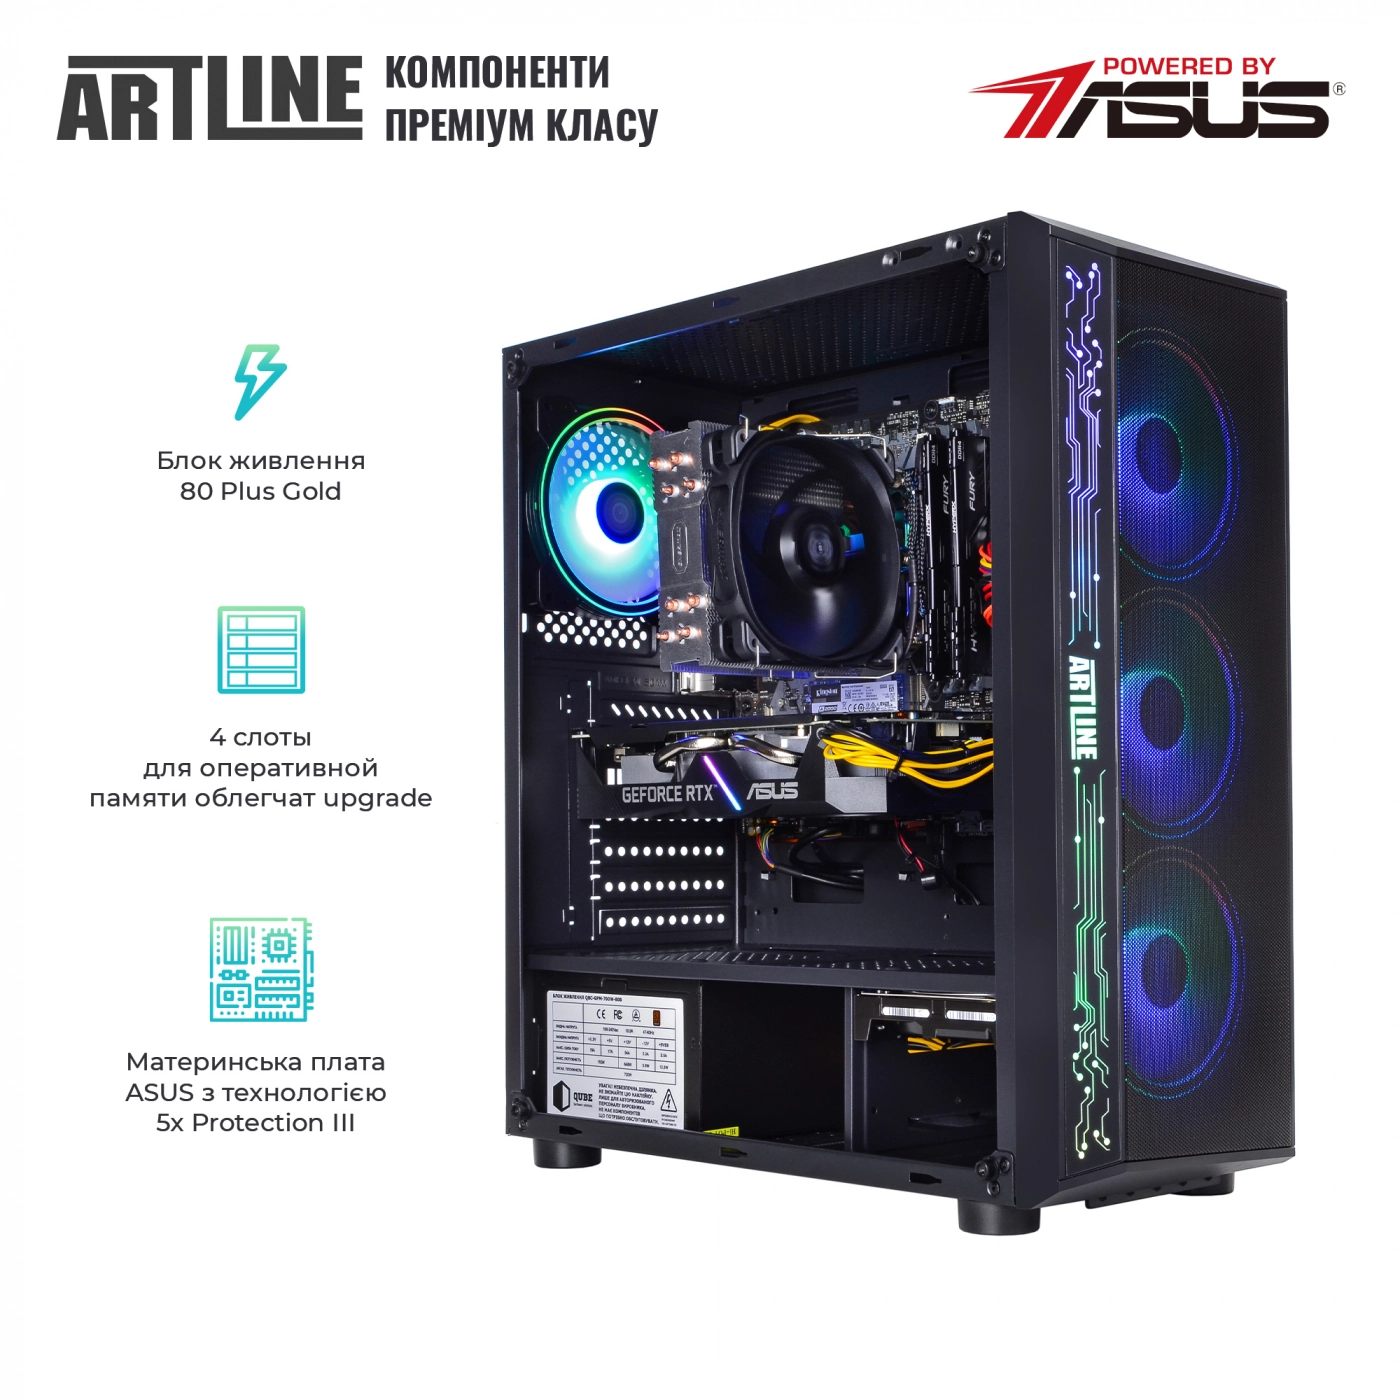 Купить Компьютер ARTLINE Gaming X77v39 - фото 3